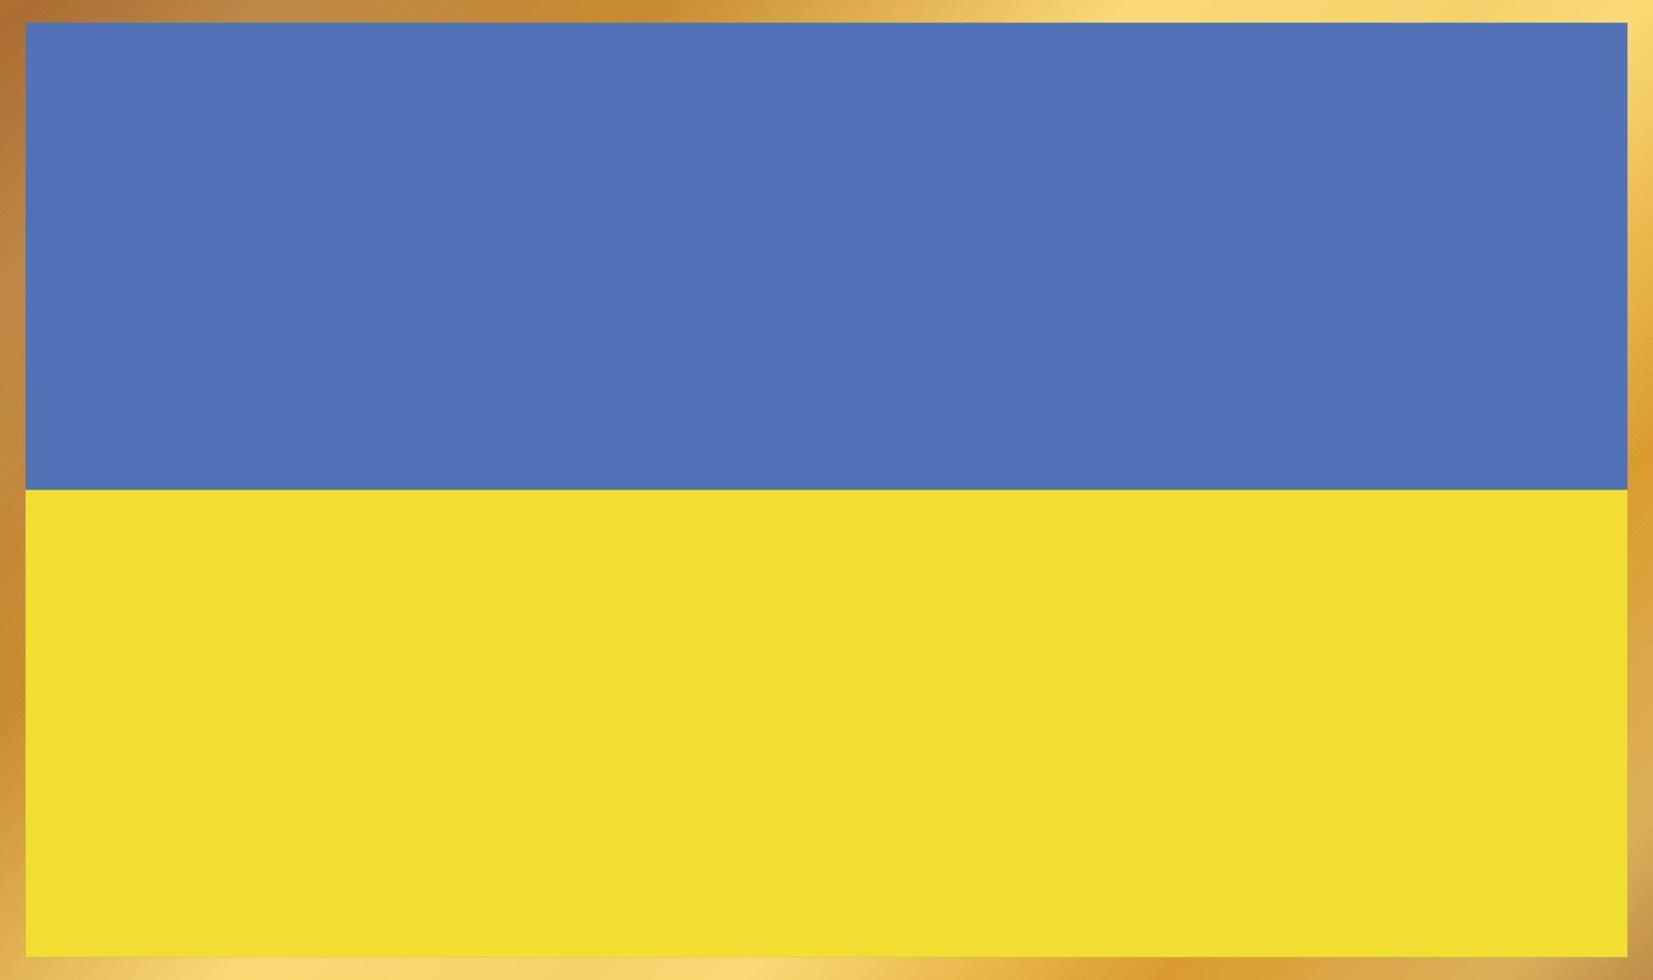 ukrainska flaggan, vektor illustration